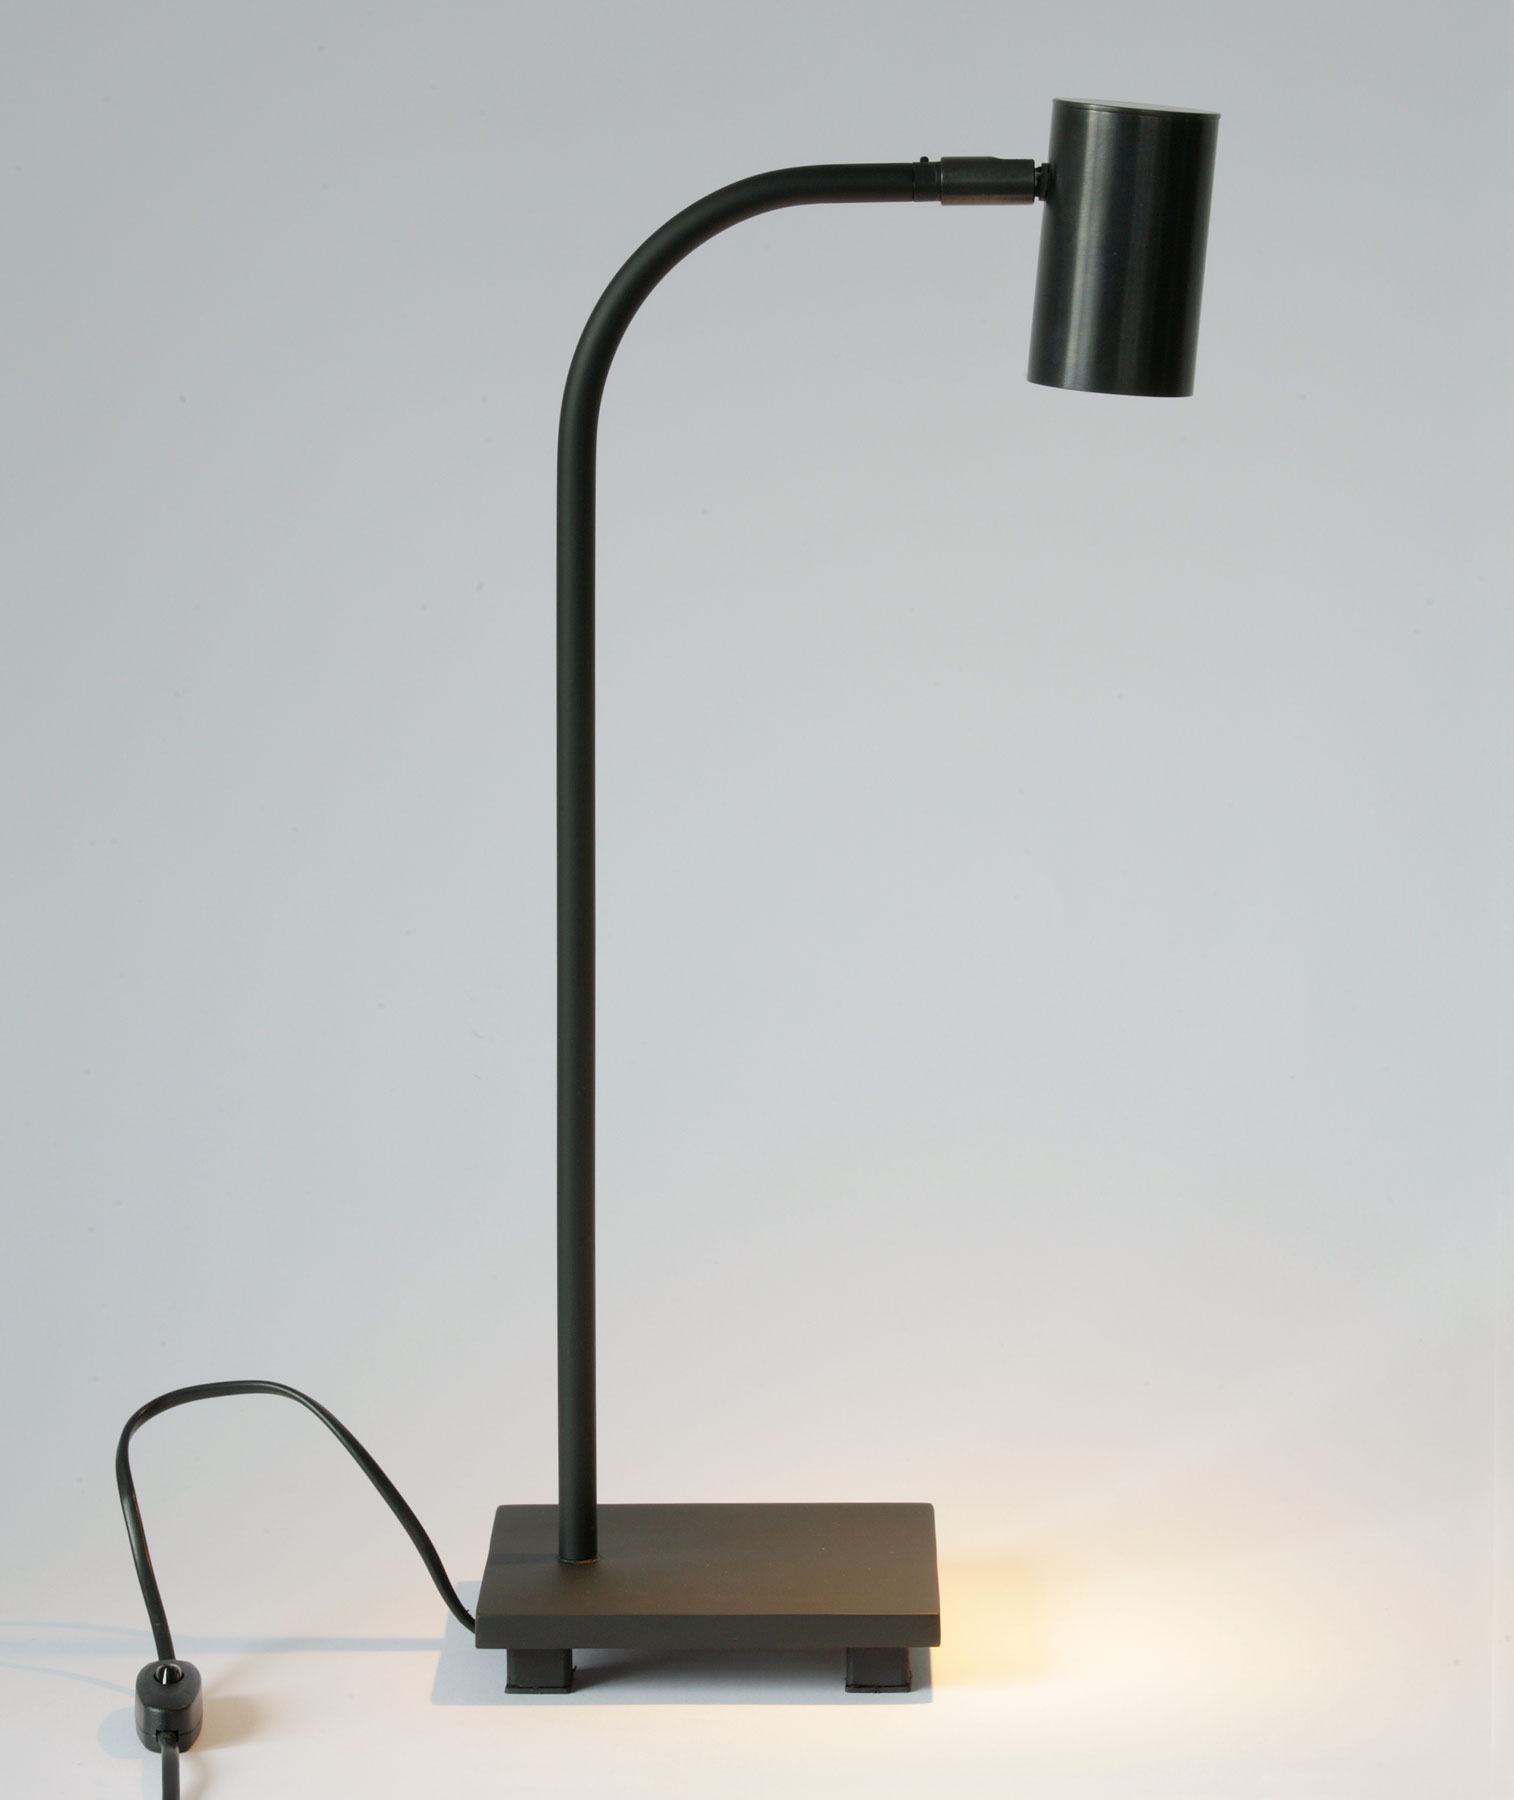 Strahler-Tischleuchte TOBINO mit Kupfer- oder Messingschirm: Tischleuchte mit verstellbarem Strahler, hier Messing dunkel patiniert